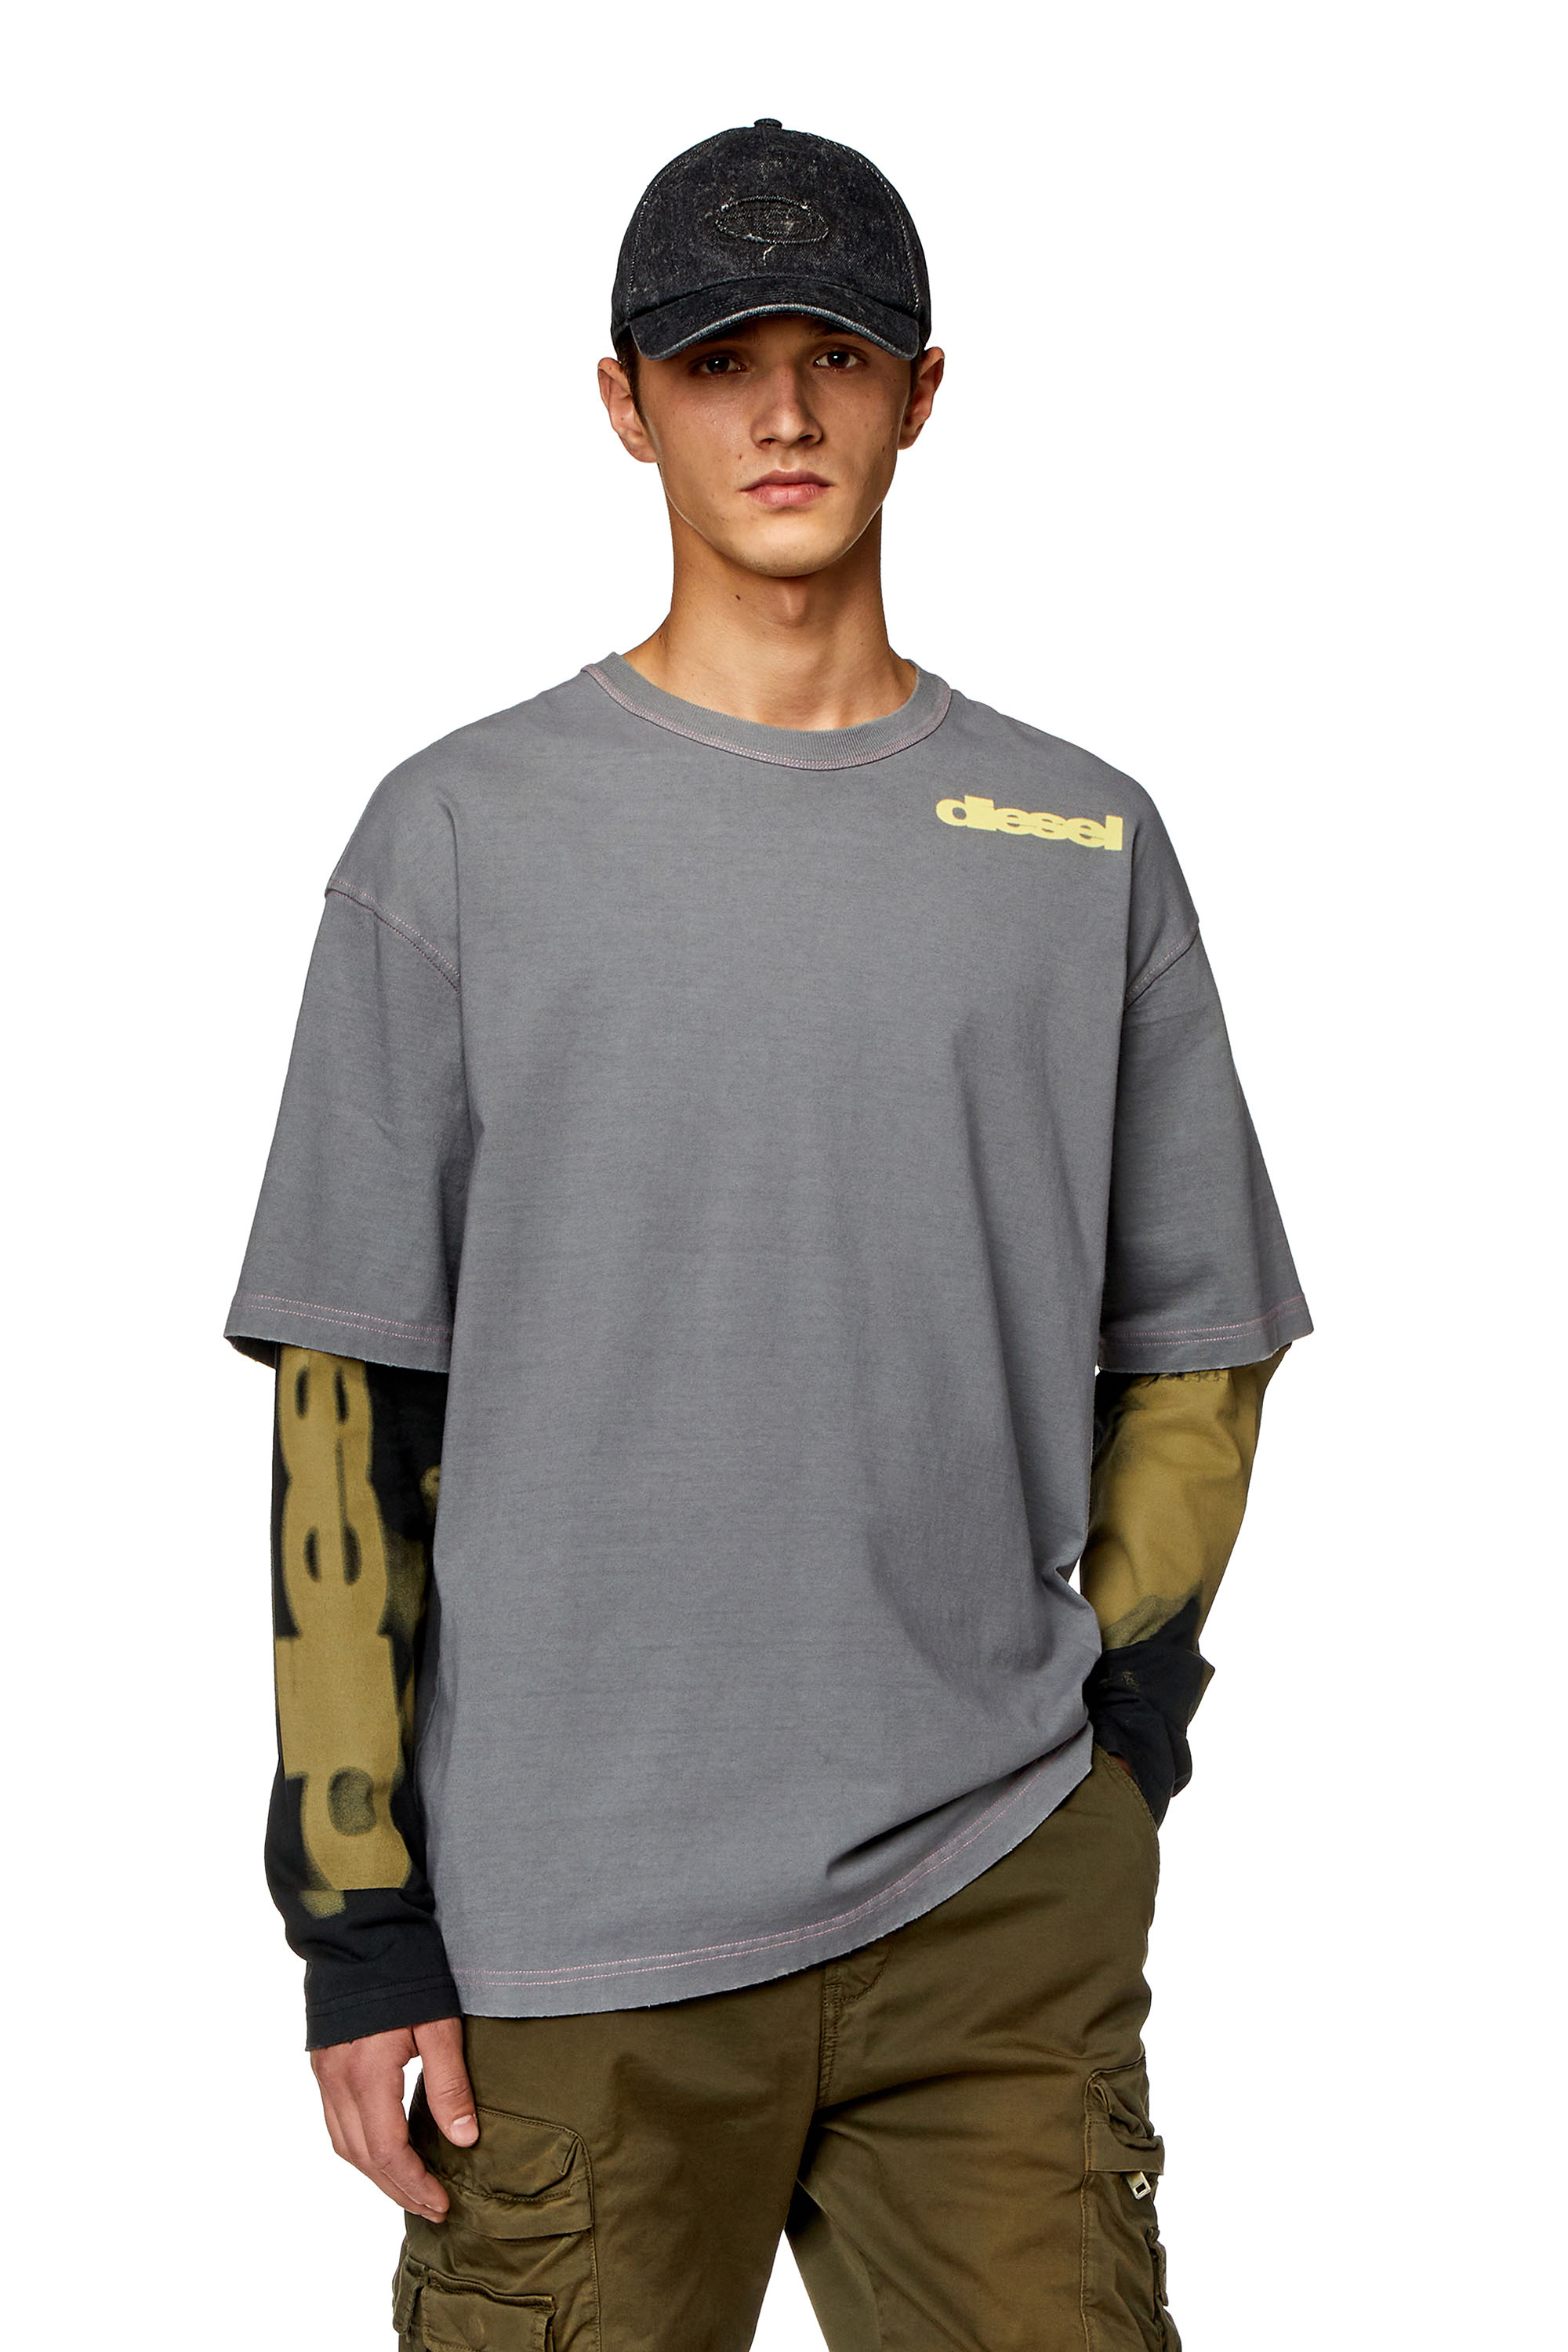 Diesel - Top con efecto en capas con estampado manchado - Camisetas - Hombre - Multicolor